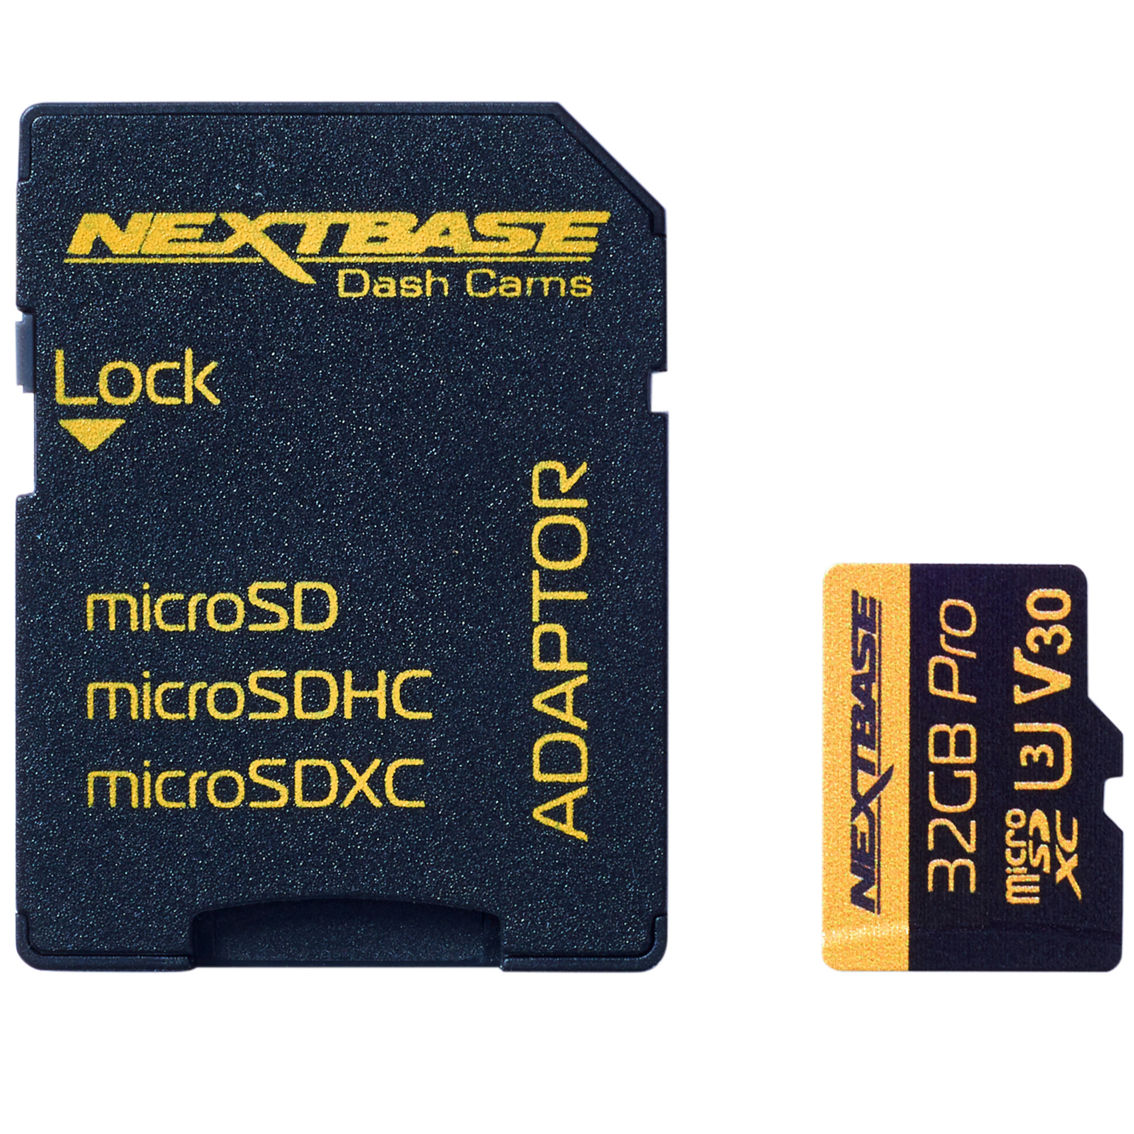 Nextbase 32GB U3 microSD Card